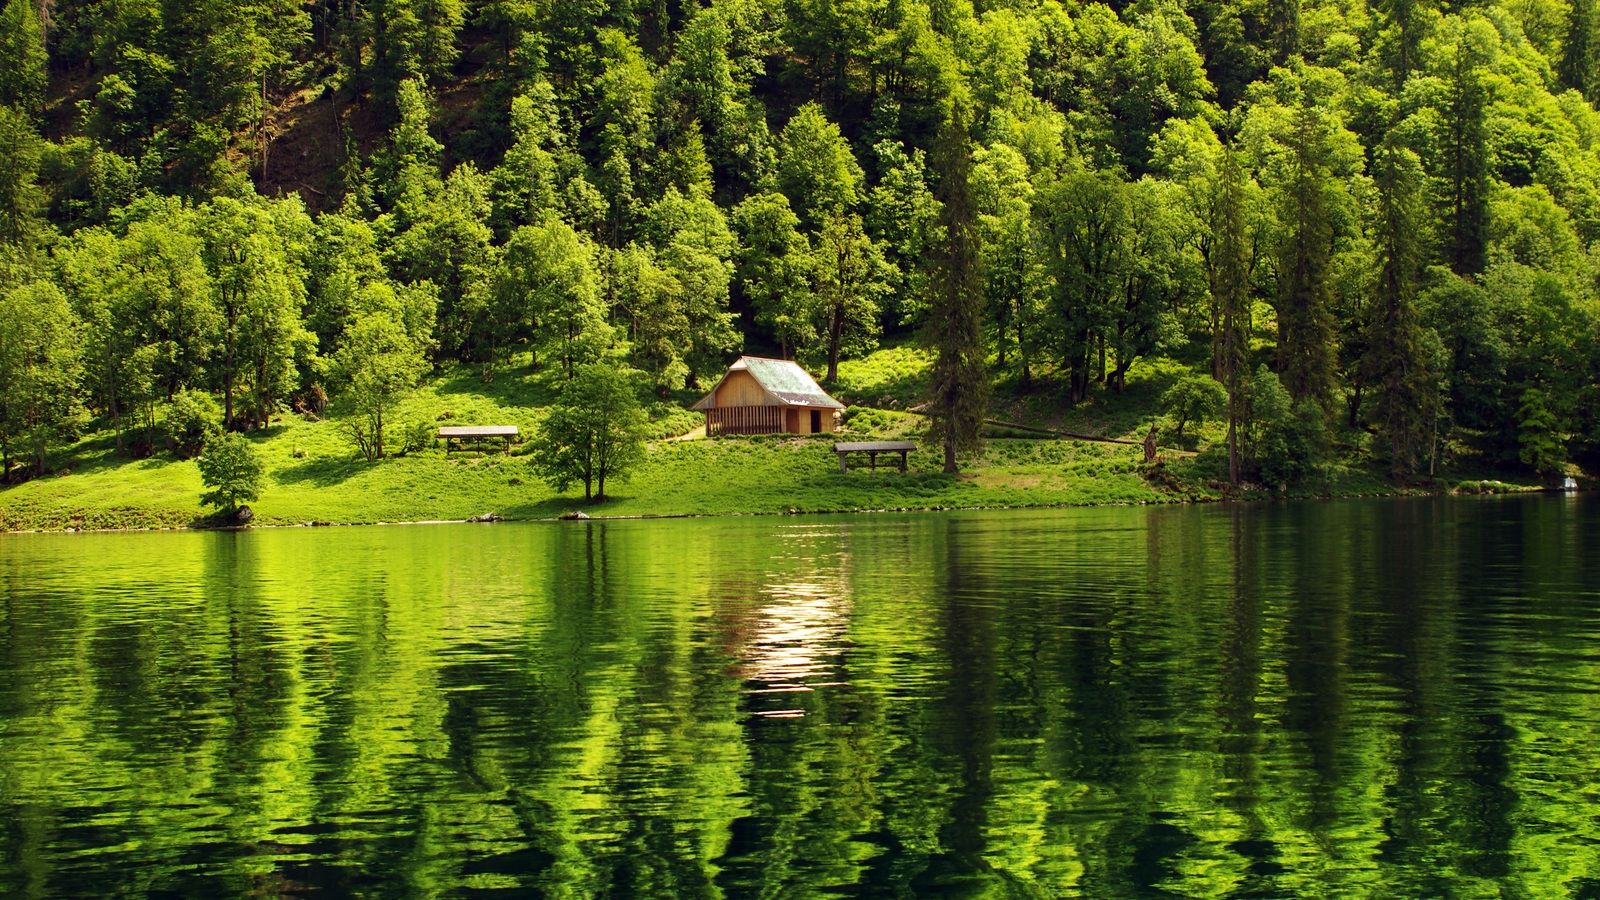 Free download wallpaper forest lake cabin landscape desktop